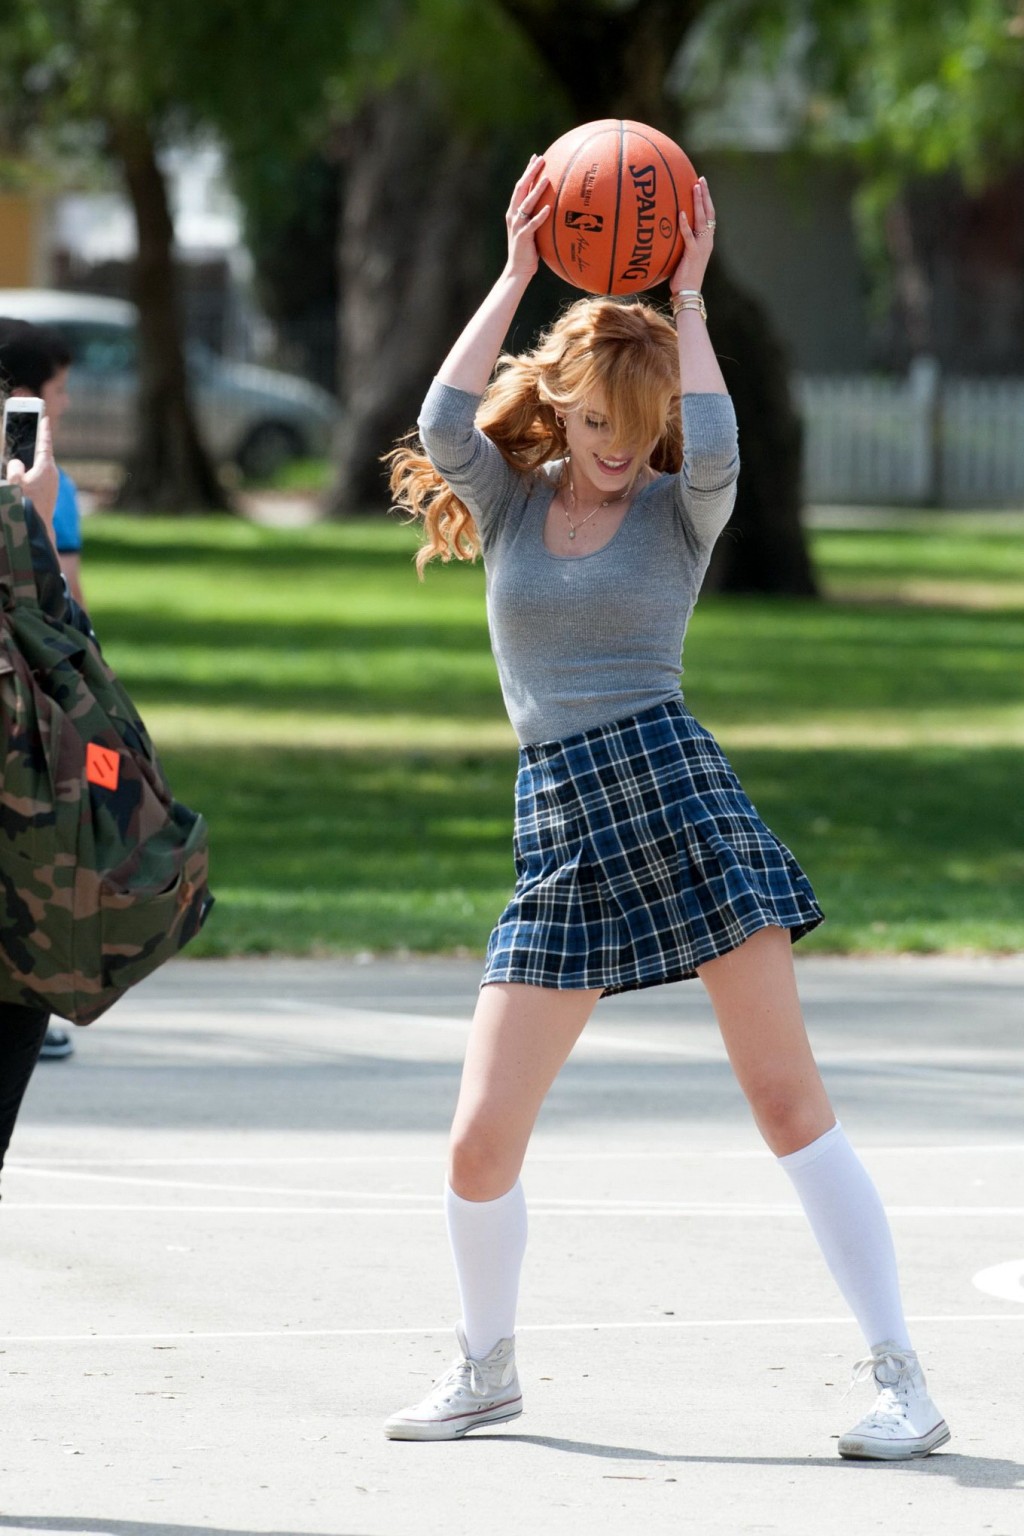 ベラ・ソーン、「Most ghos」の撮影で女子高生姿でバスケをする
 #75200791